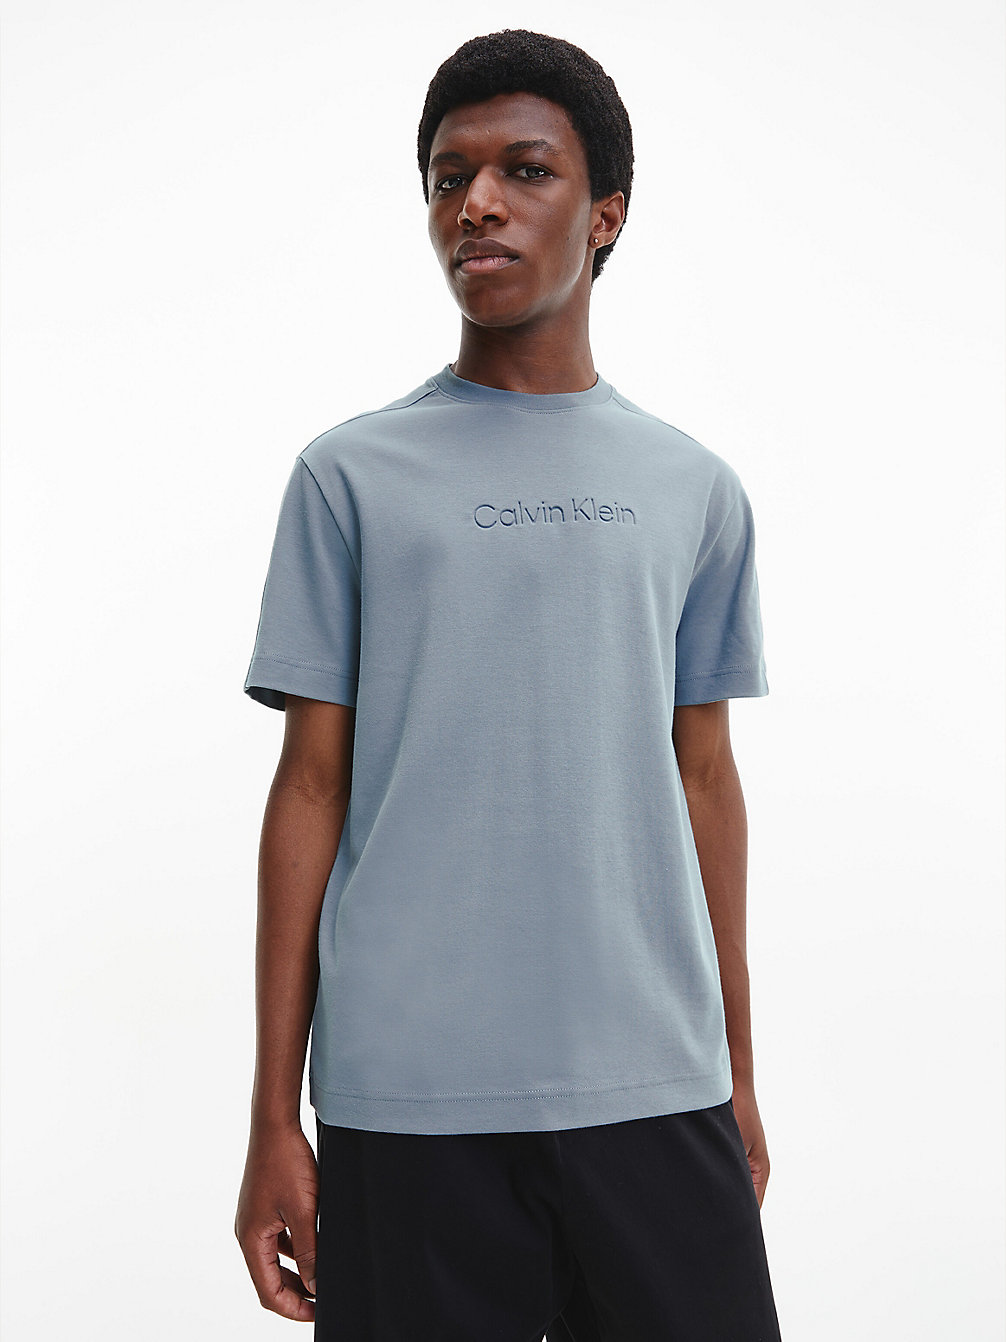 GREY TAR > Luźny T-Shirt Z Bawełny Organicznej > undefined Mężczyźni - Calvin Klein